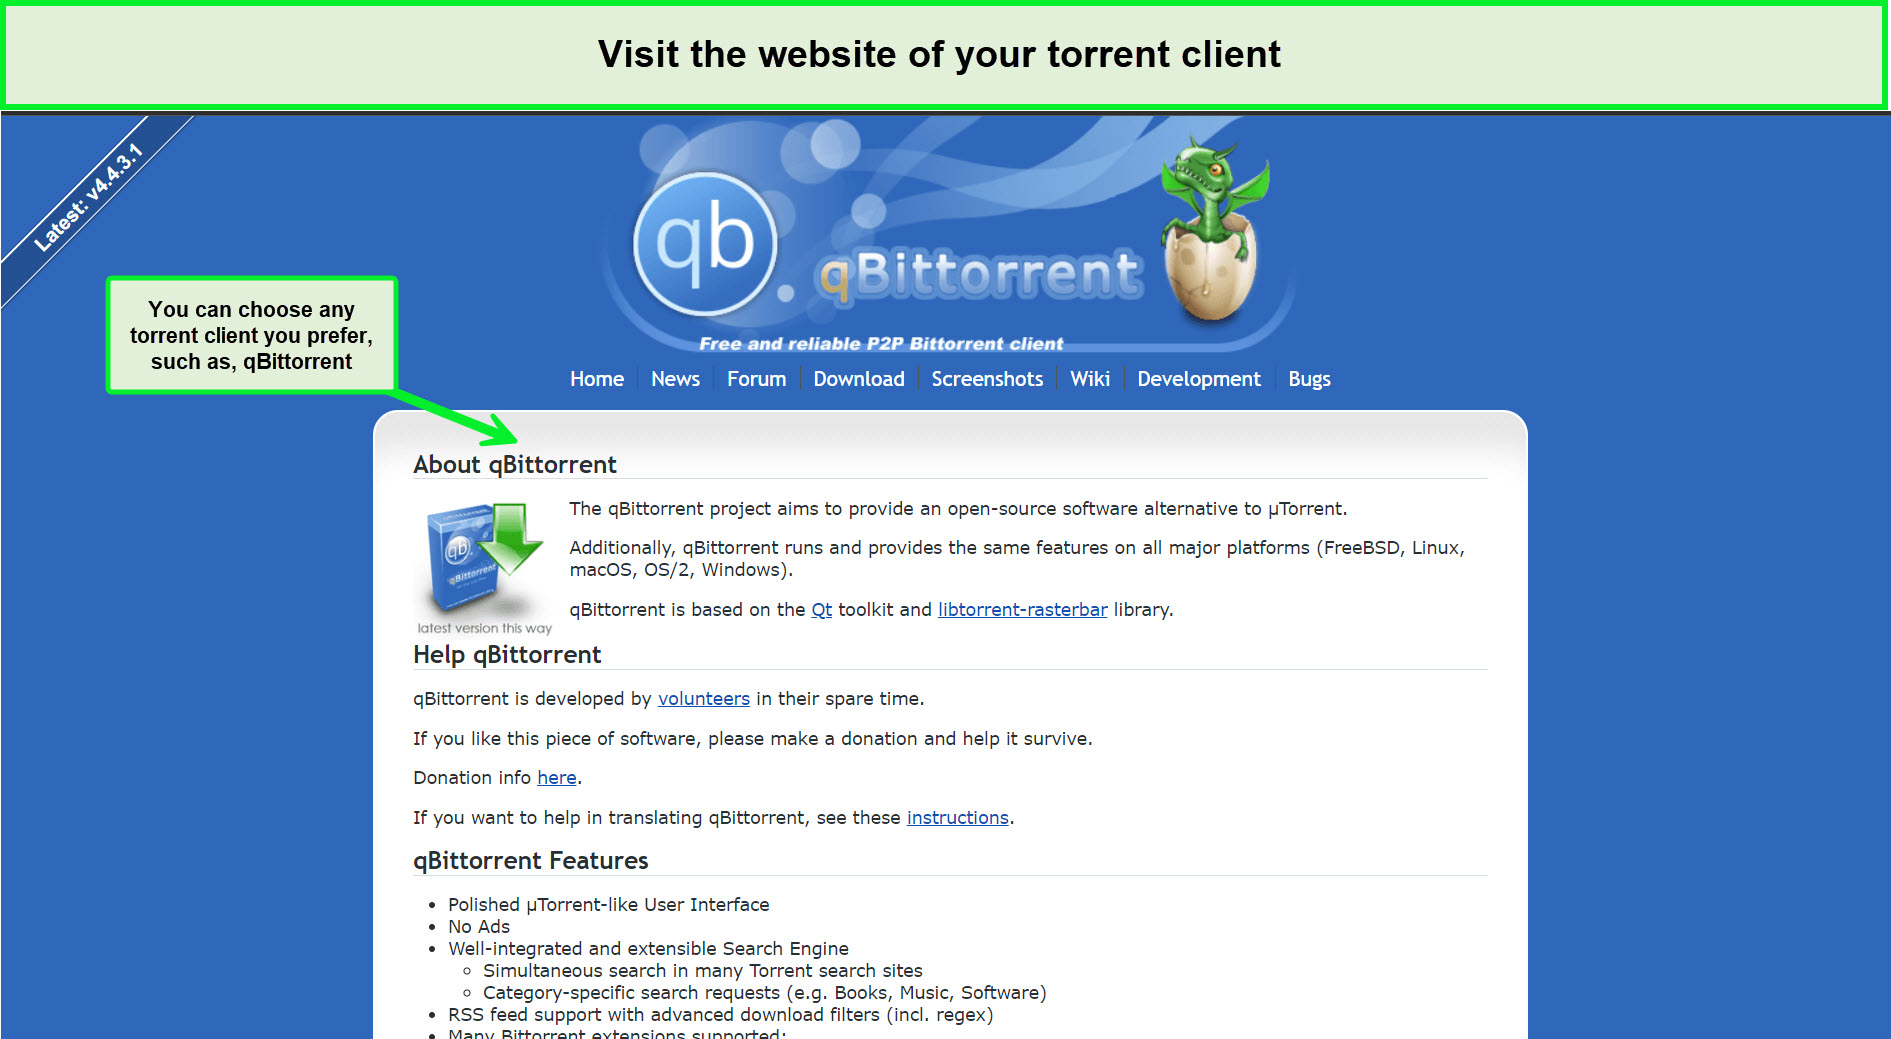 torrent-client-in-Spain